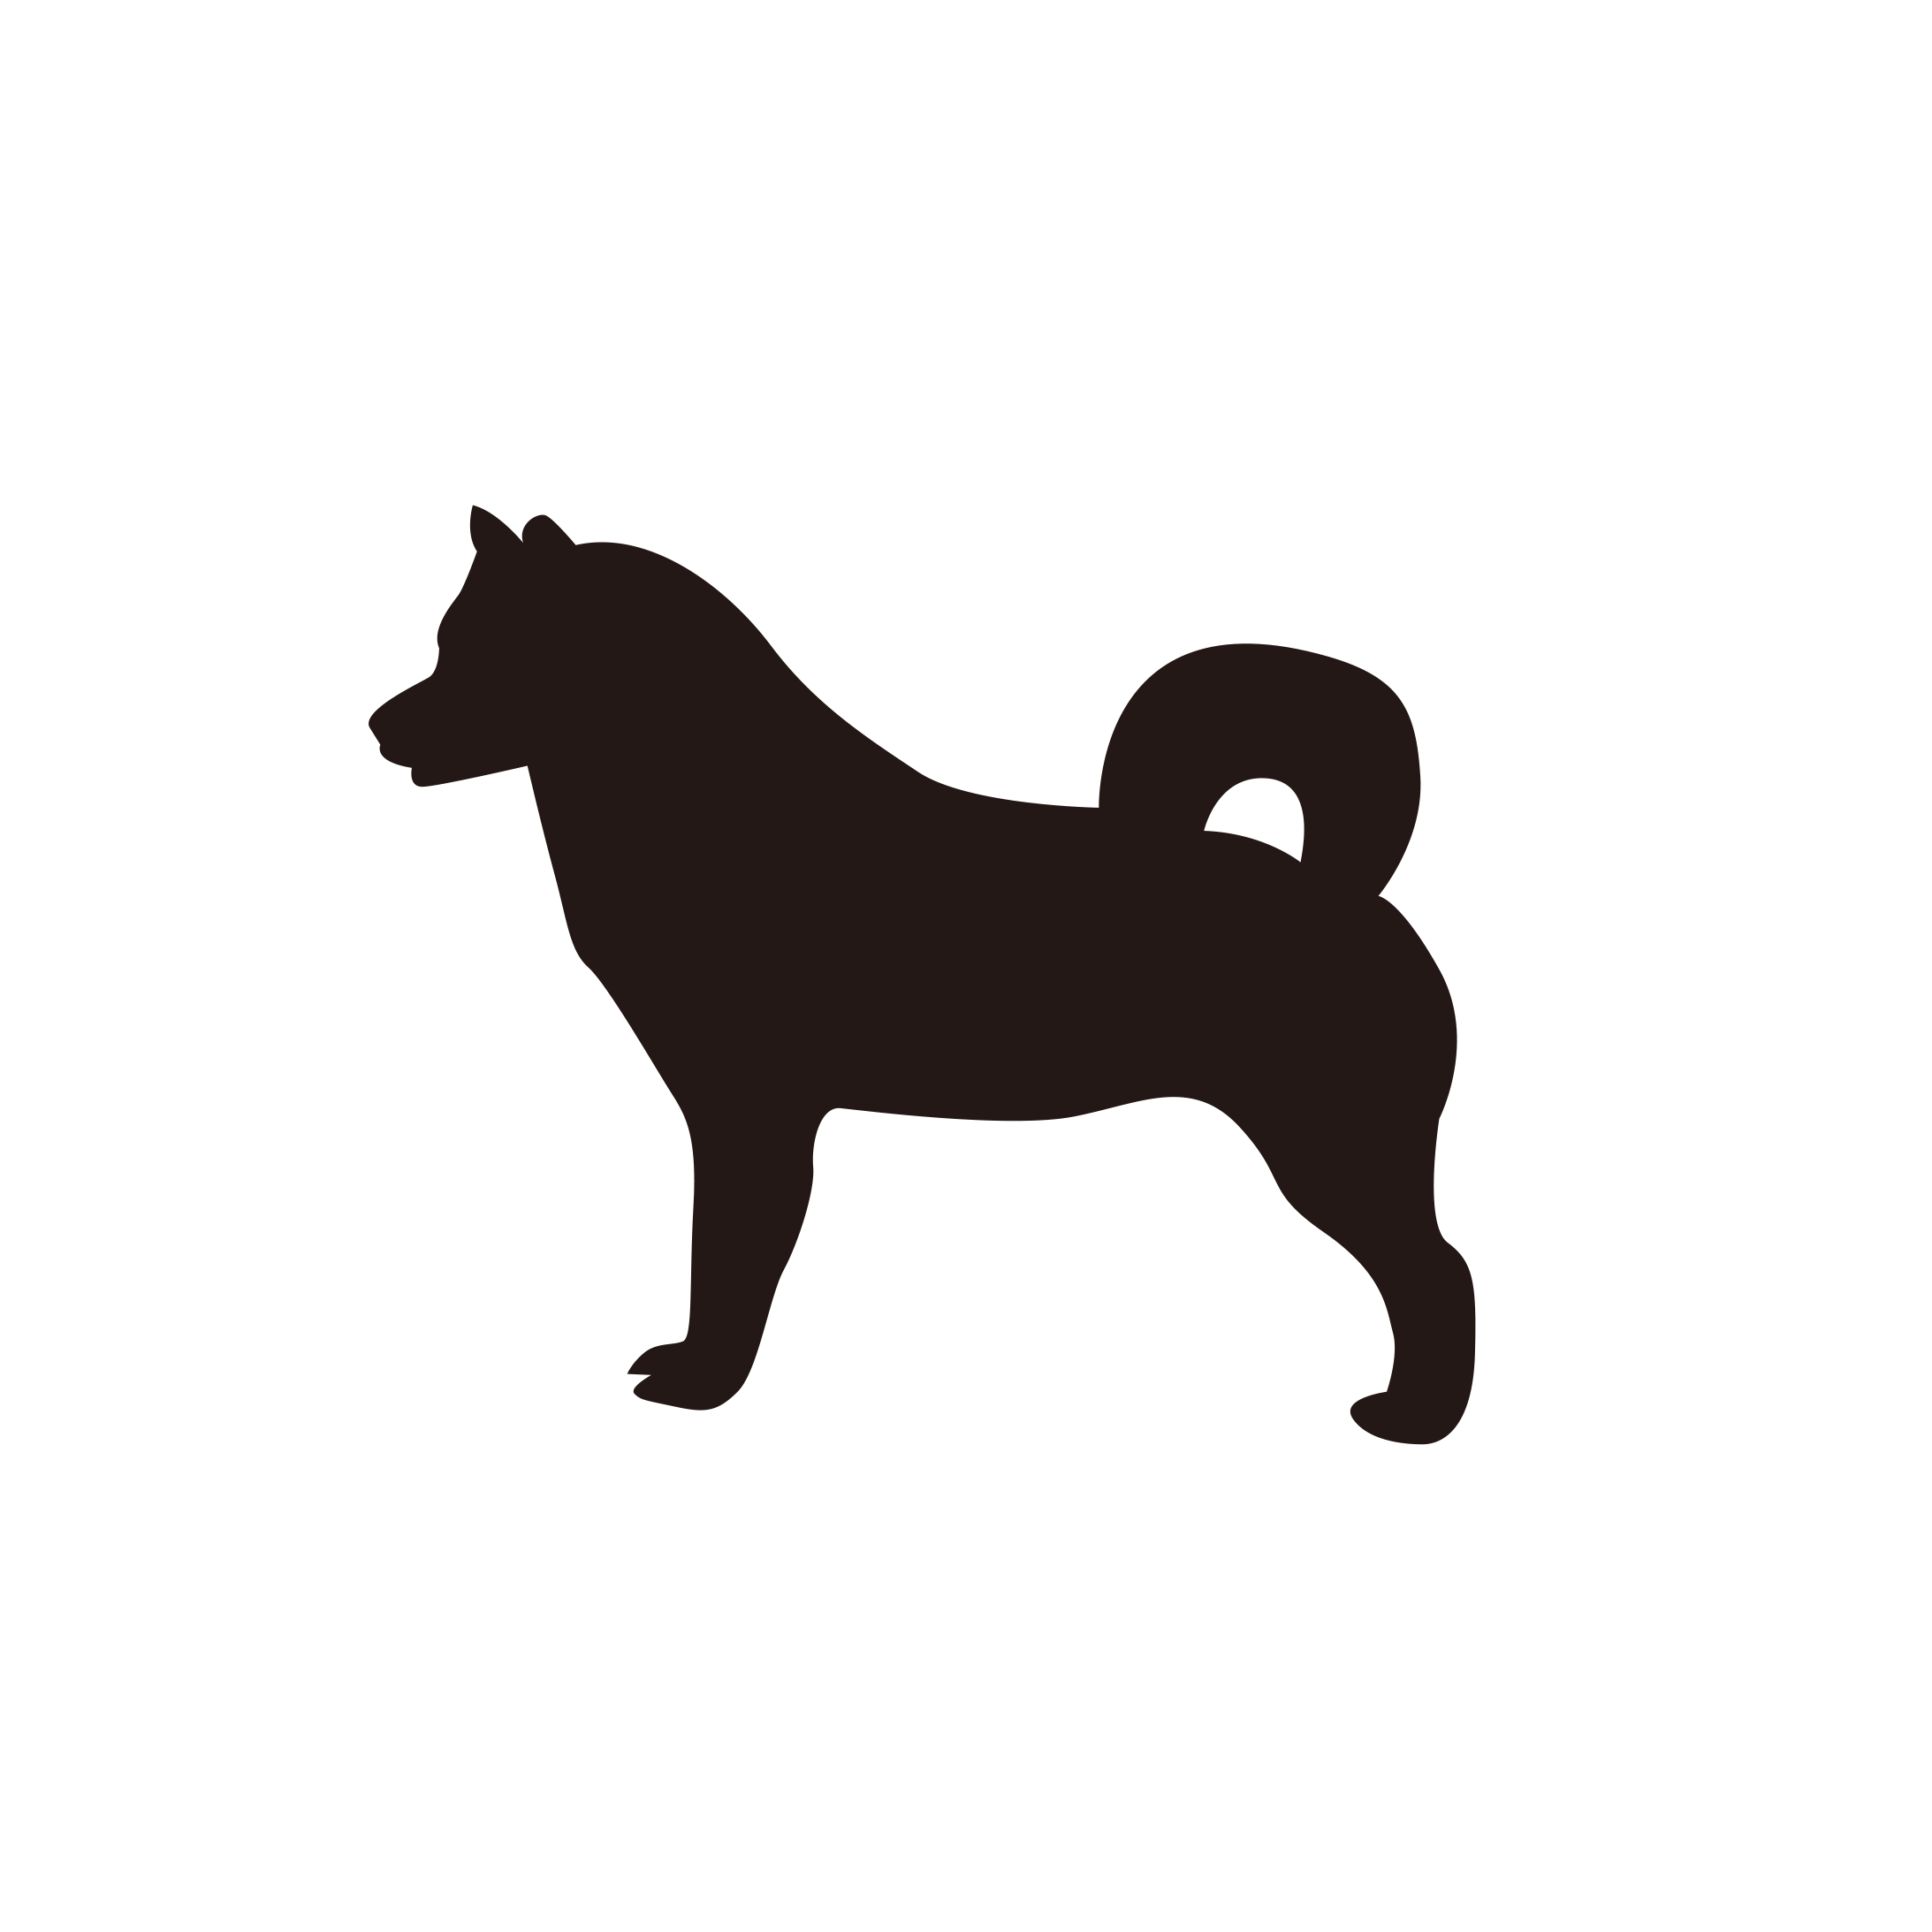 Elbauldedolo 最も選択された 犬 イラスト フリー 白黒 犬 イラスト フリー 白黒